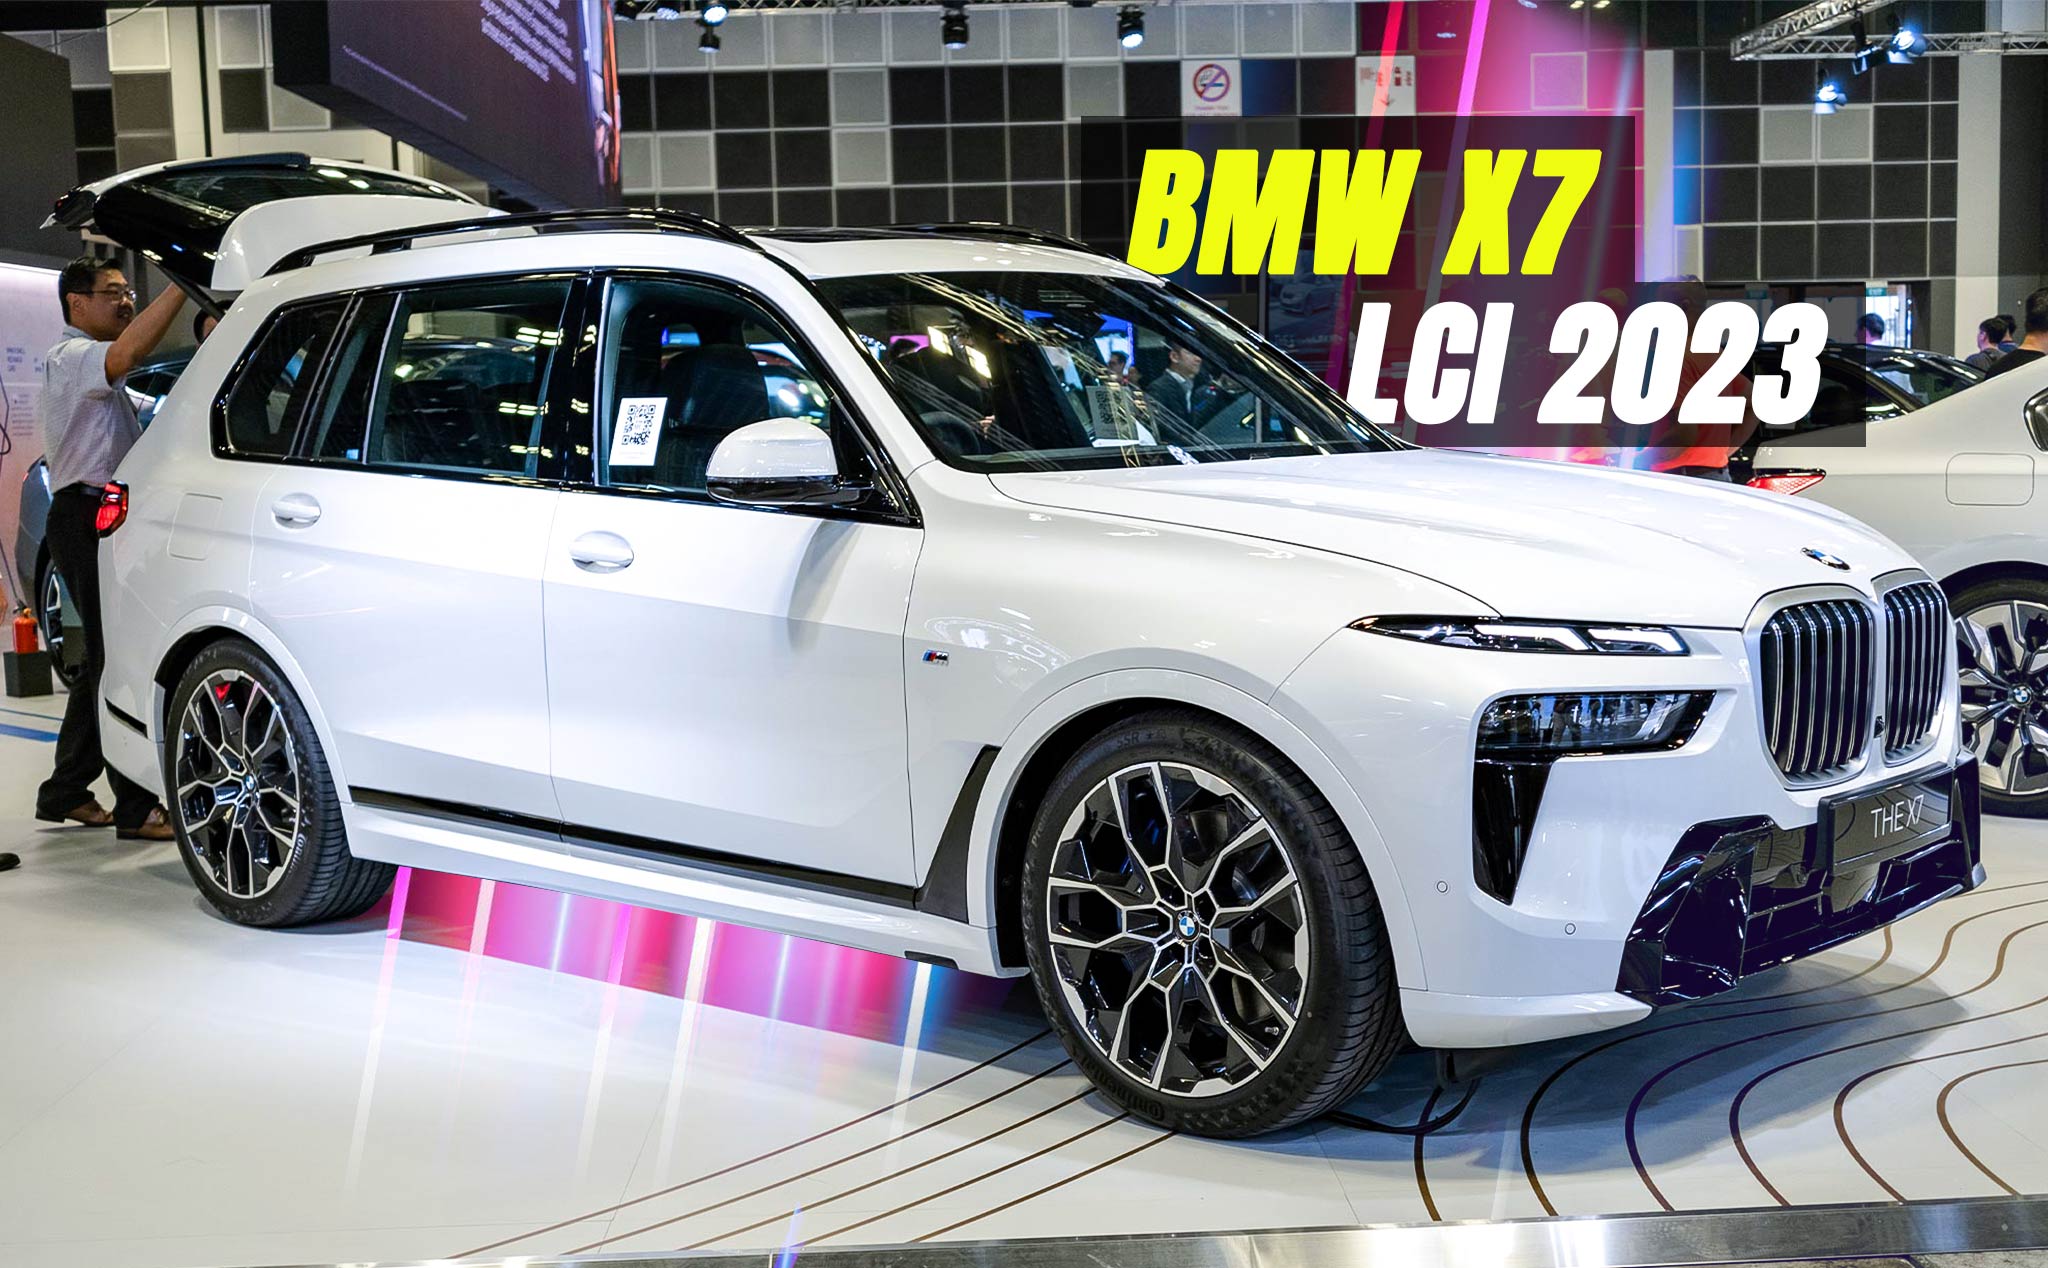 Trên tay BMW X7 LCI 2023: Đổi mới ngoài hình, đèn LED 2 tầng, iDrive 8 màn hình cong 14.9 inch